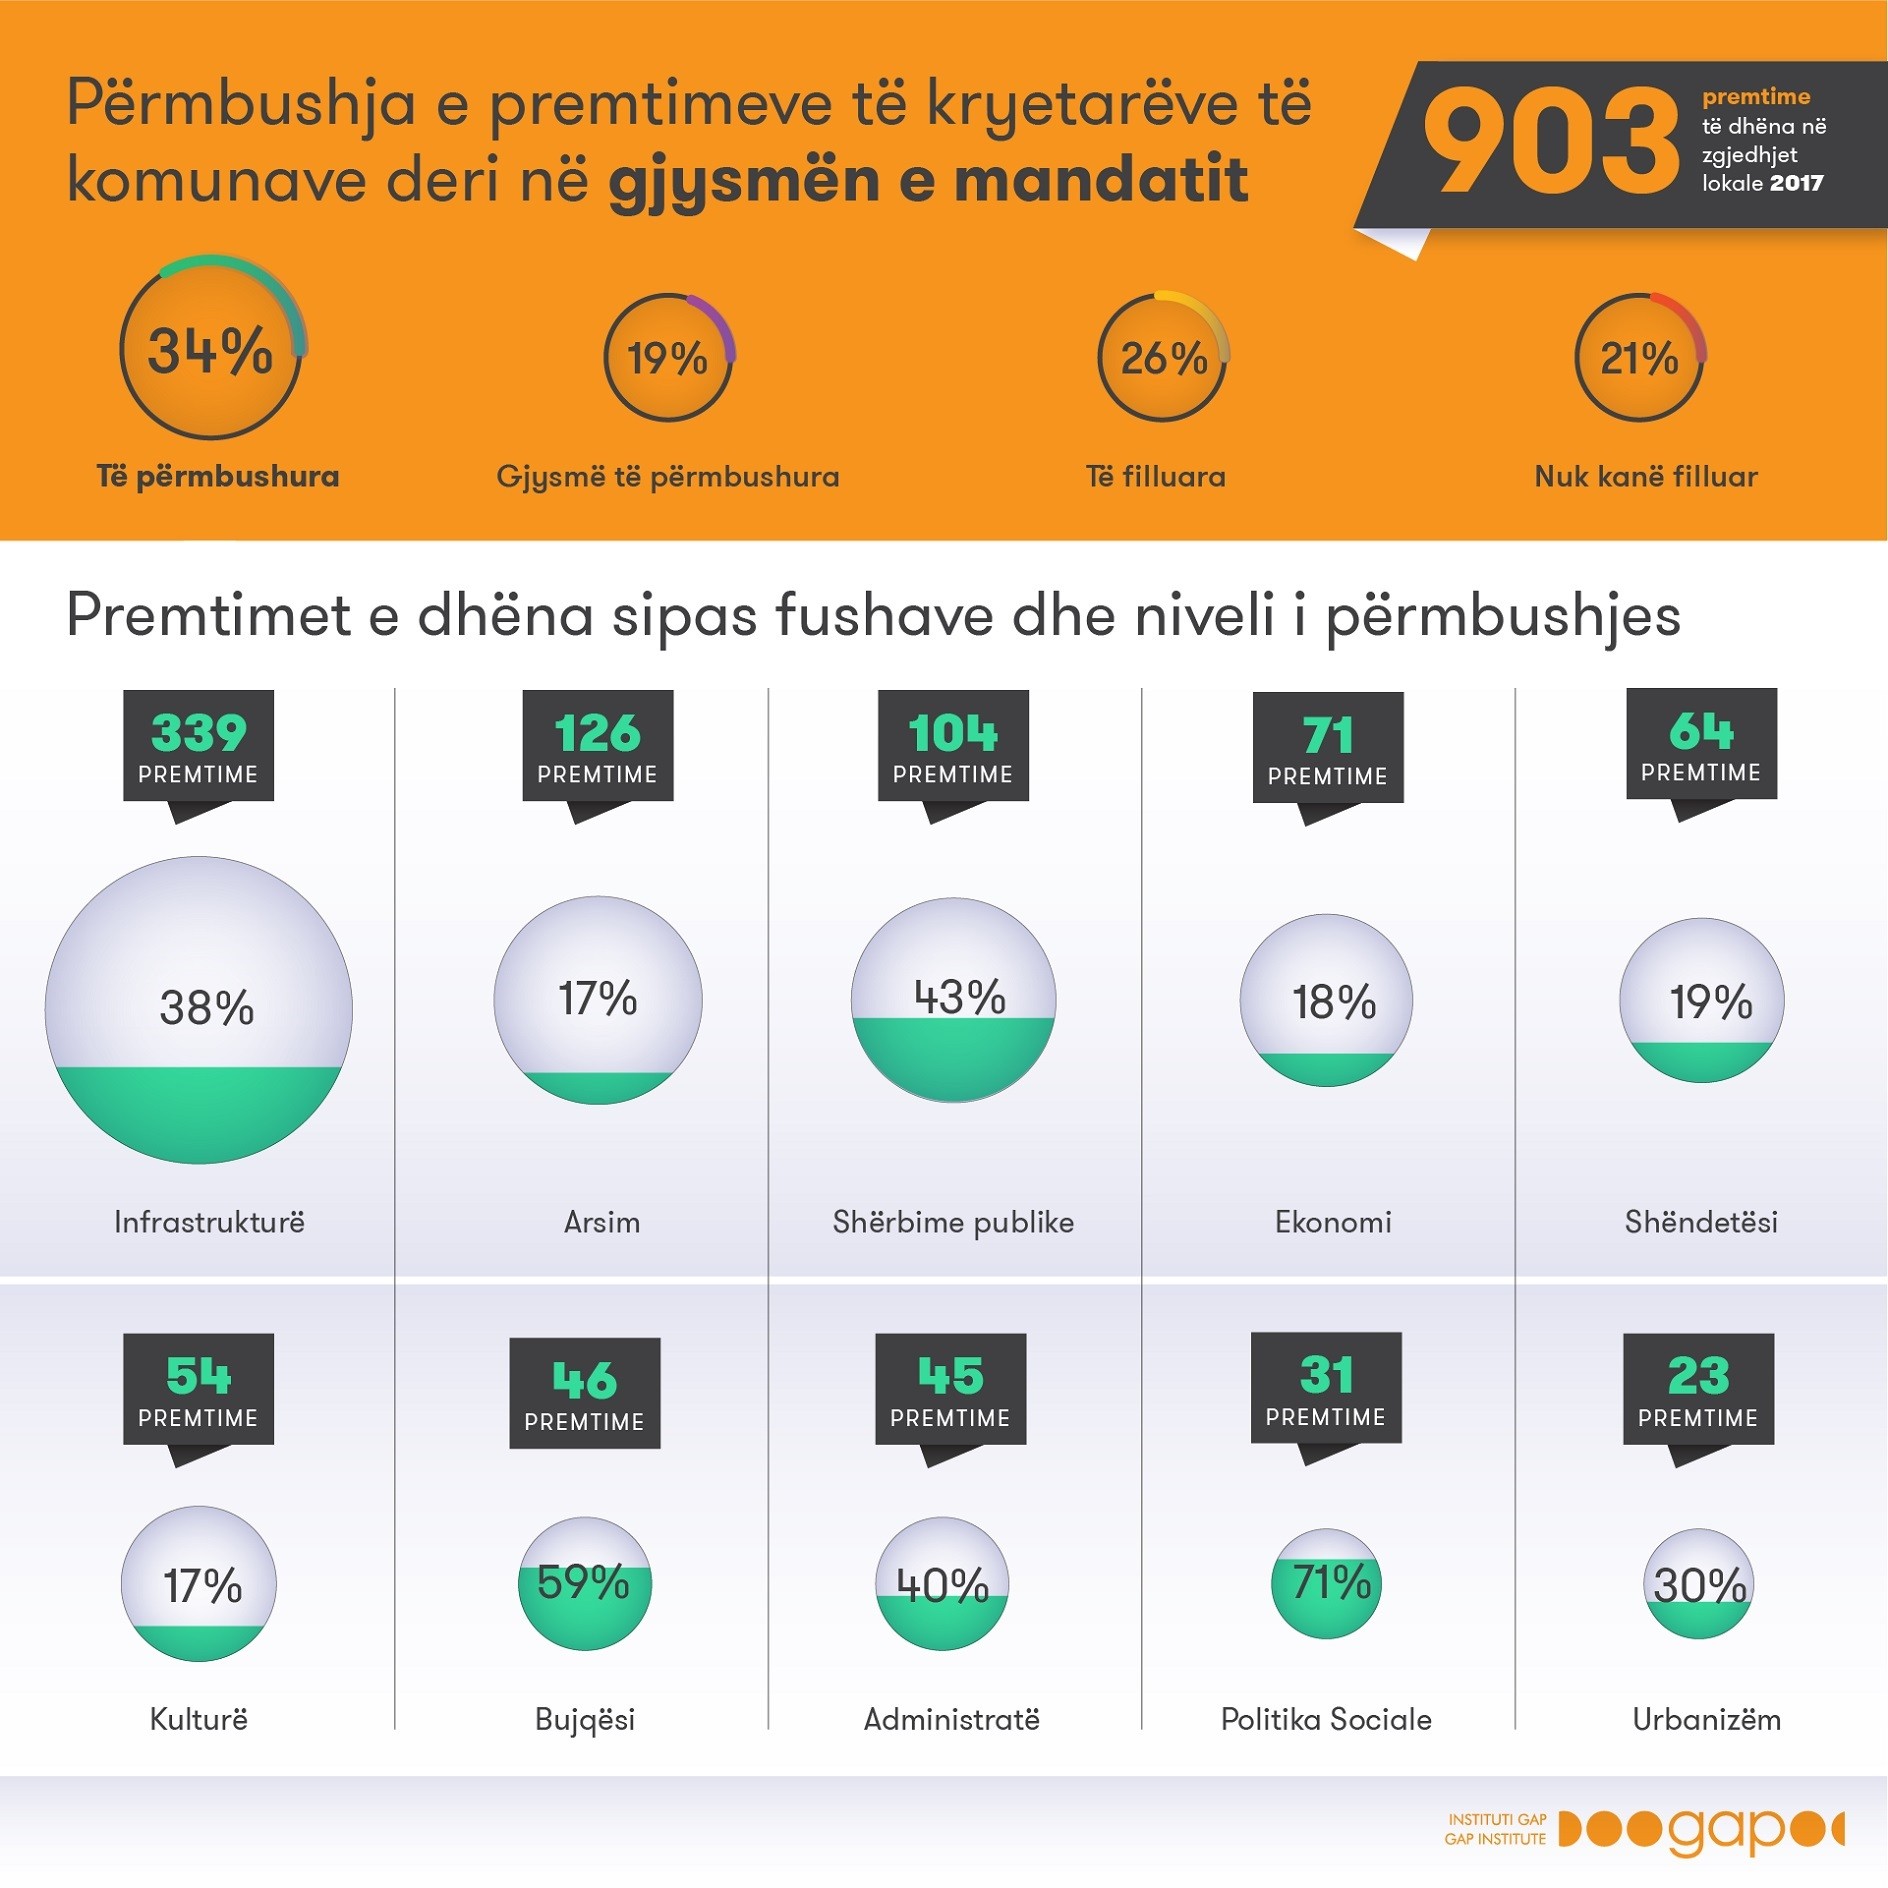 Nga 903 premtime komunat kanë përmbushur vetëm 304 premtime